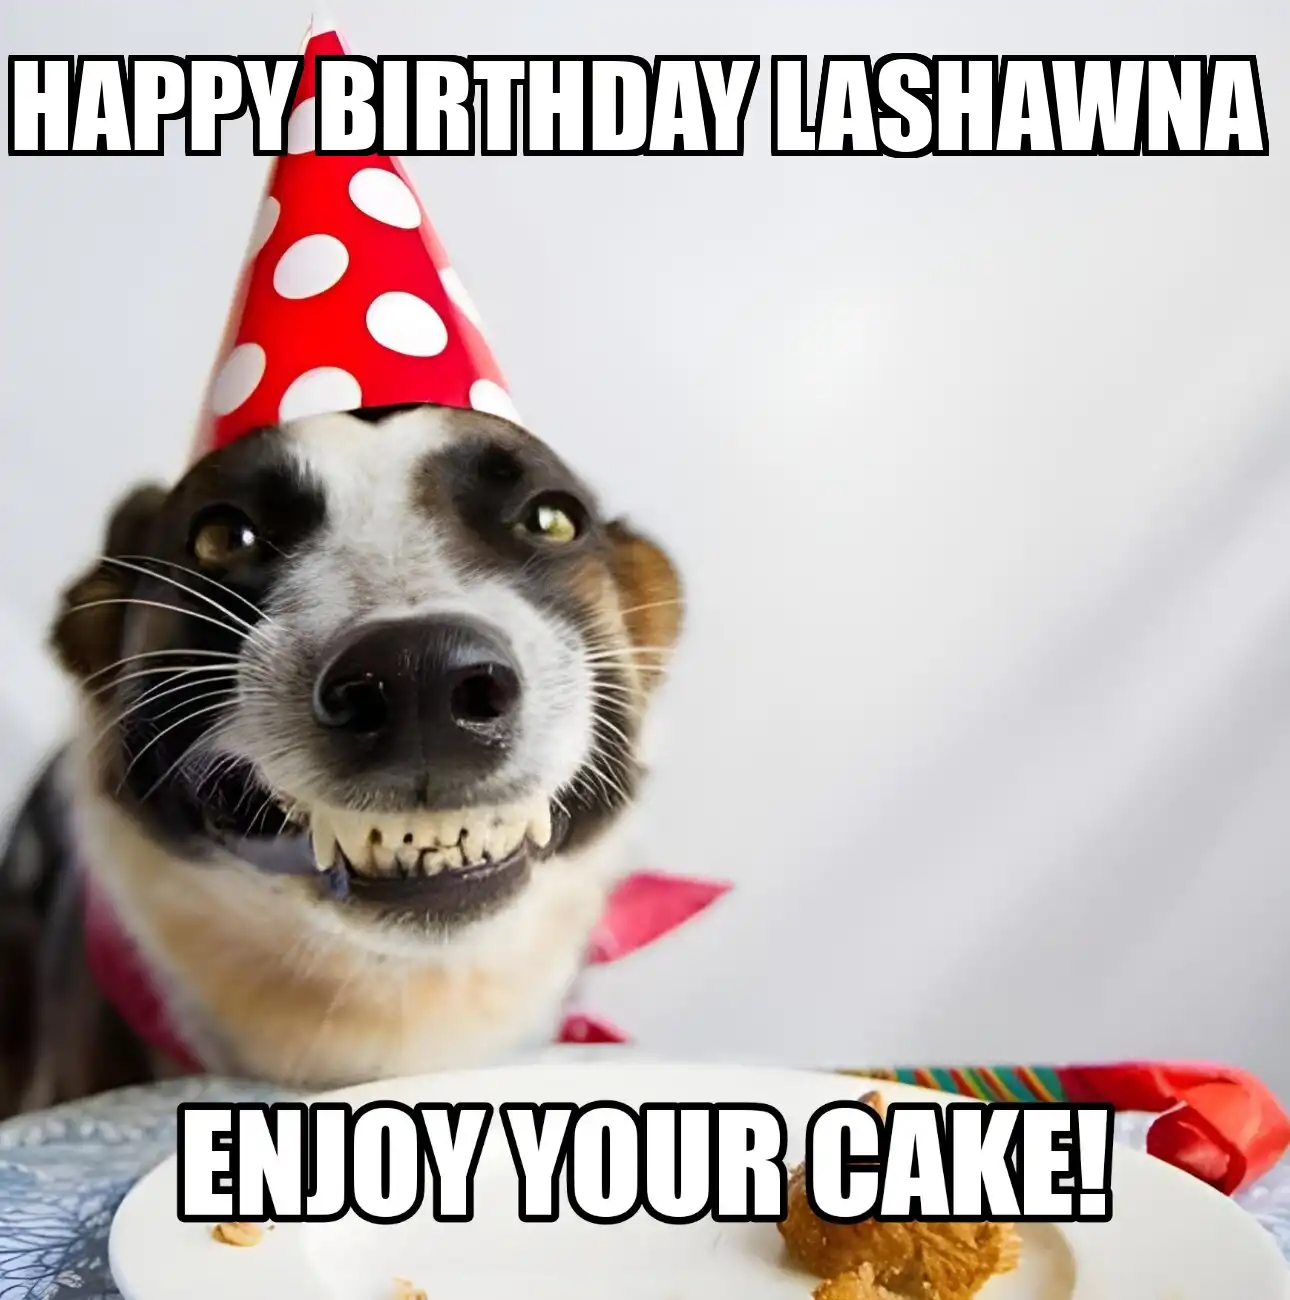 Happy Birthday Lashawna Enjoy Your Cake Dog Meme